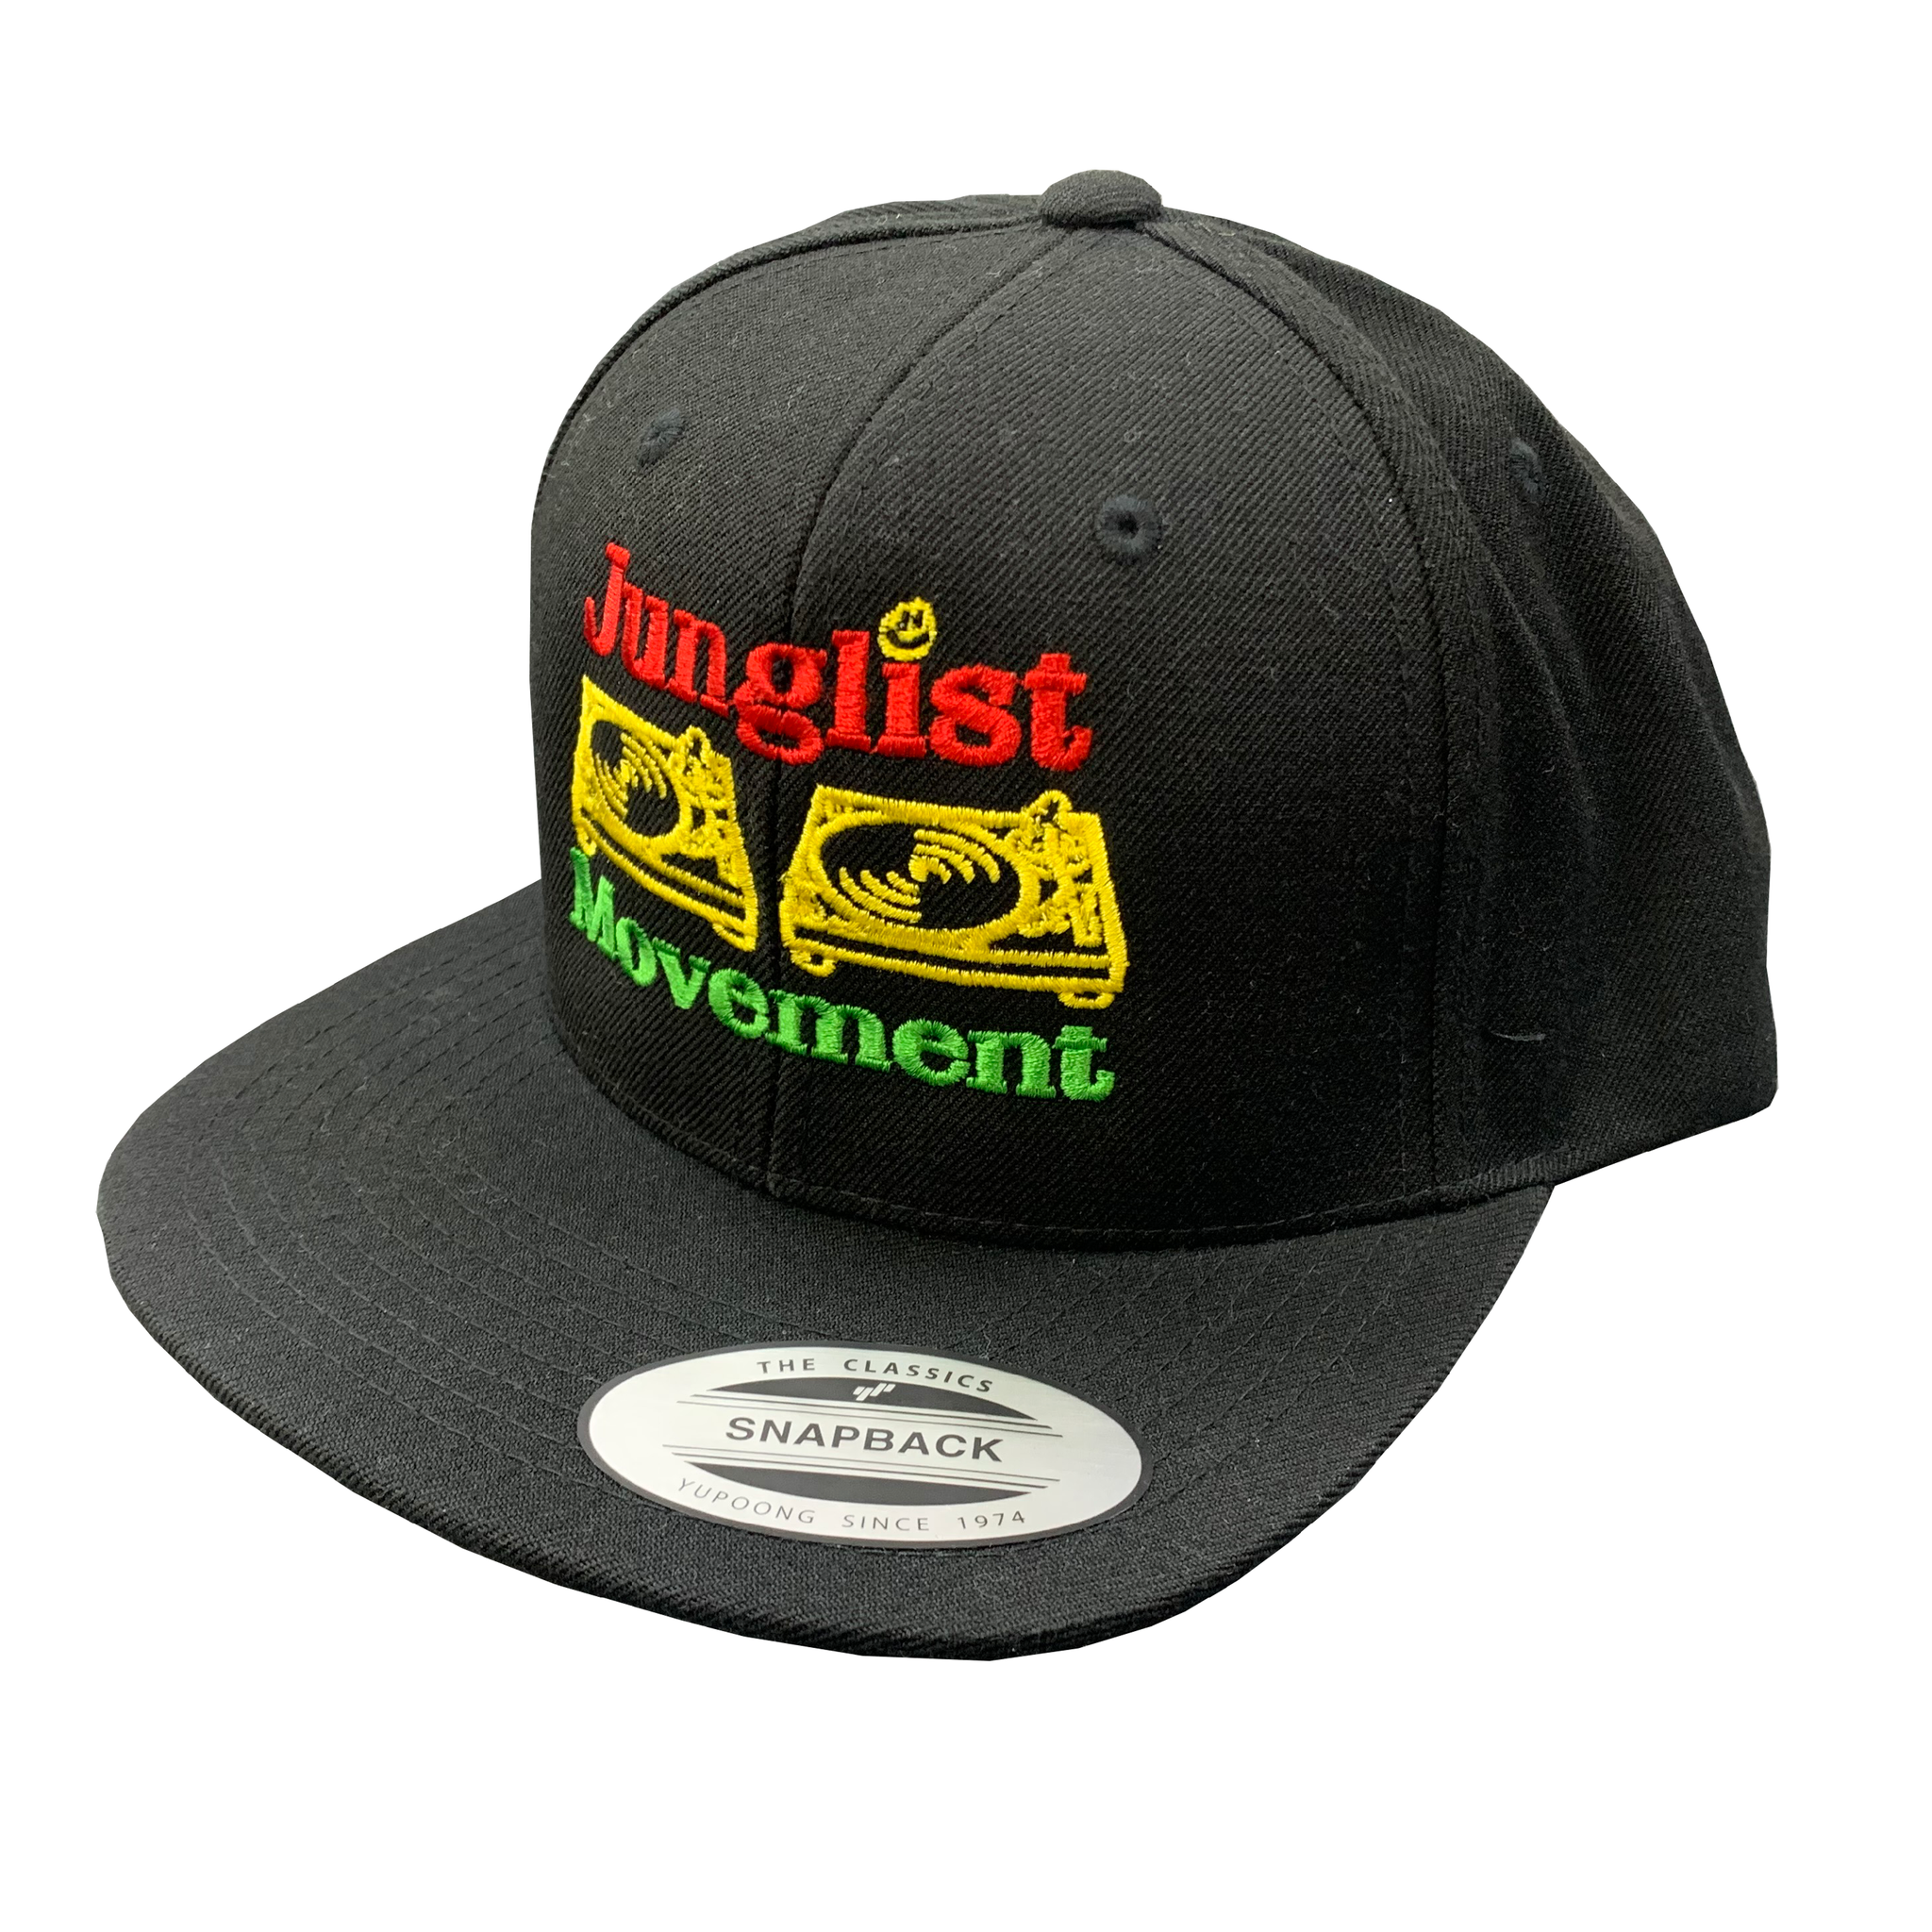 Jah-list Movement Cap Snapback Black (Emb)